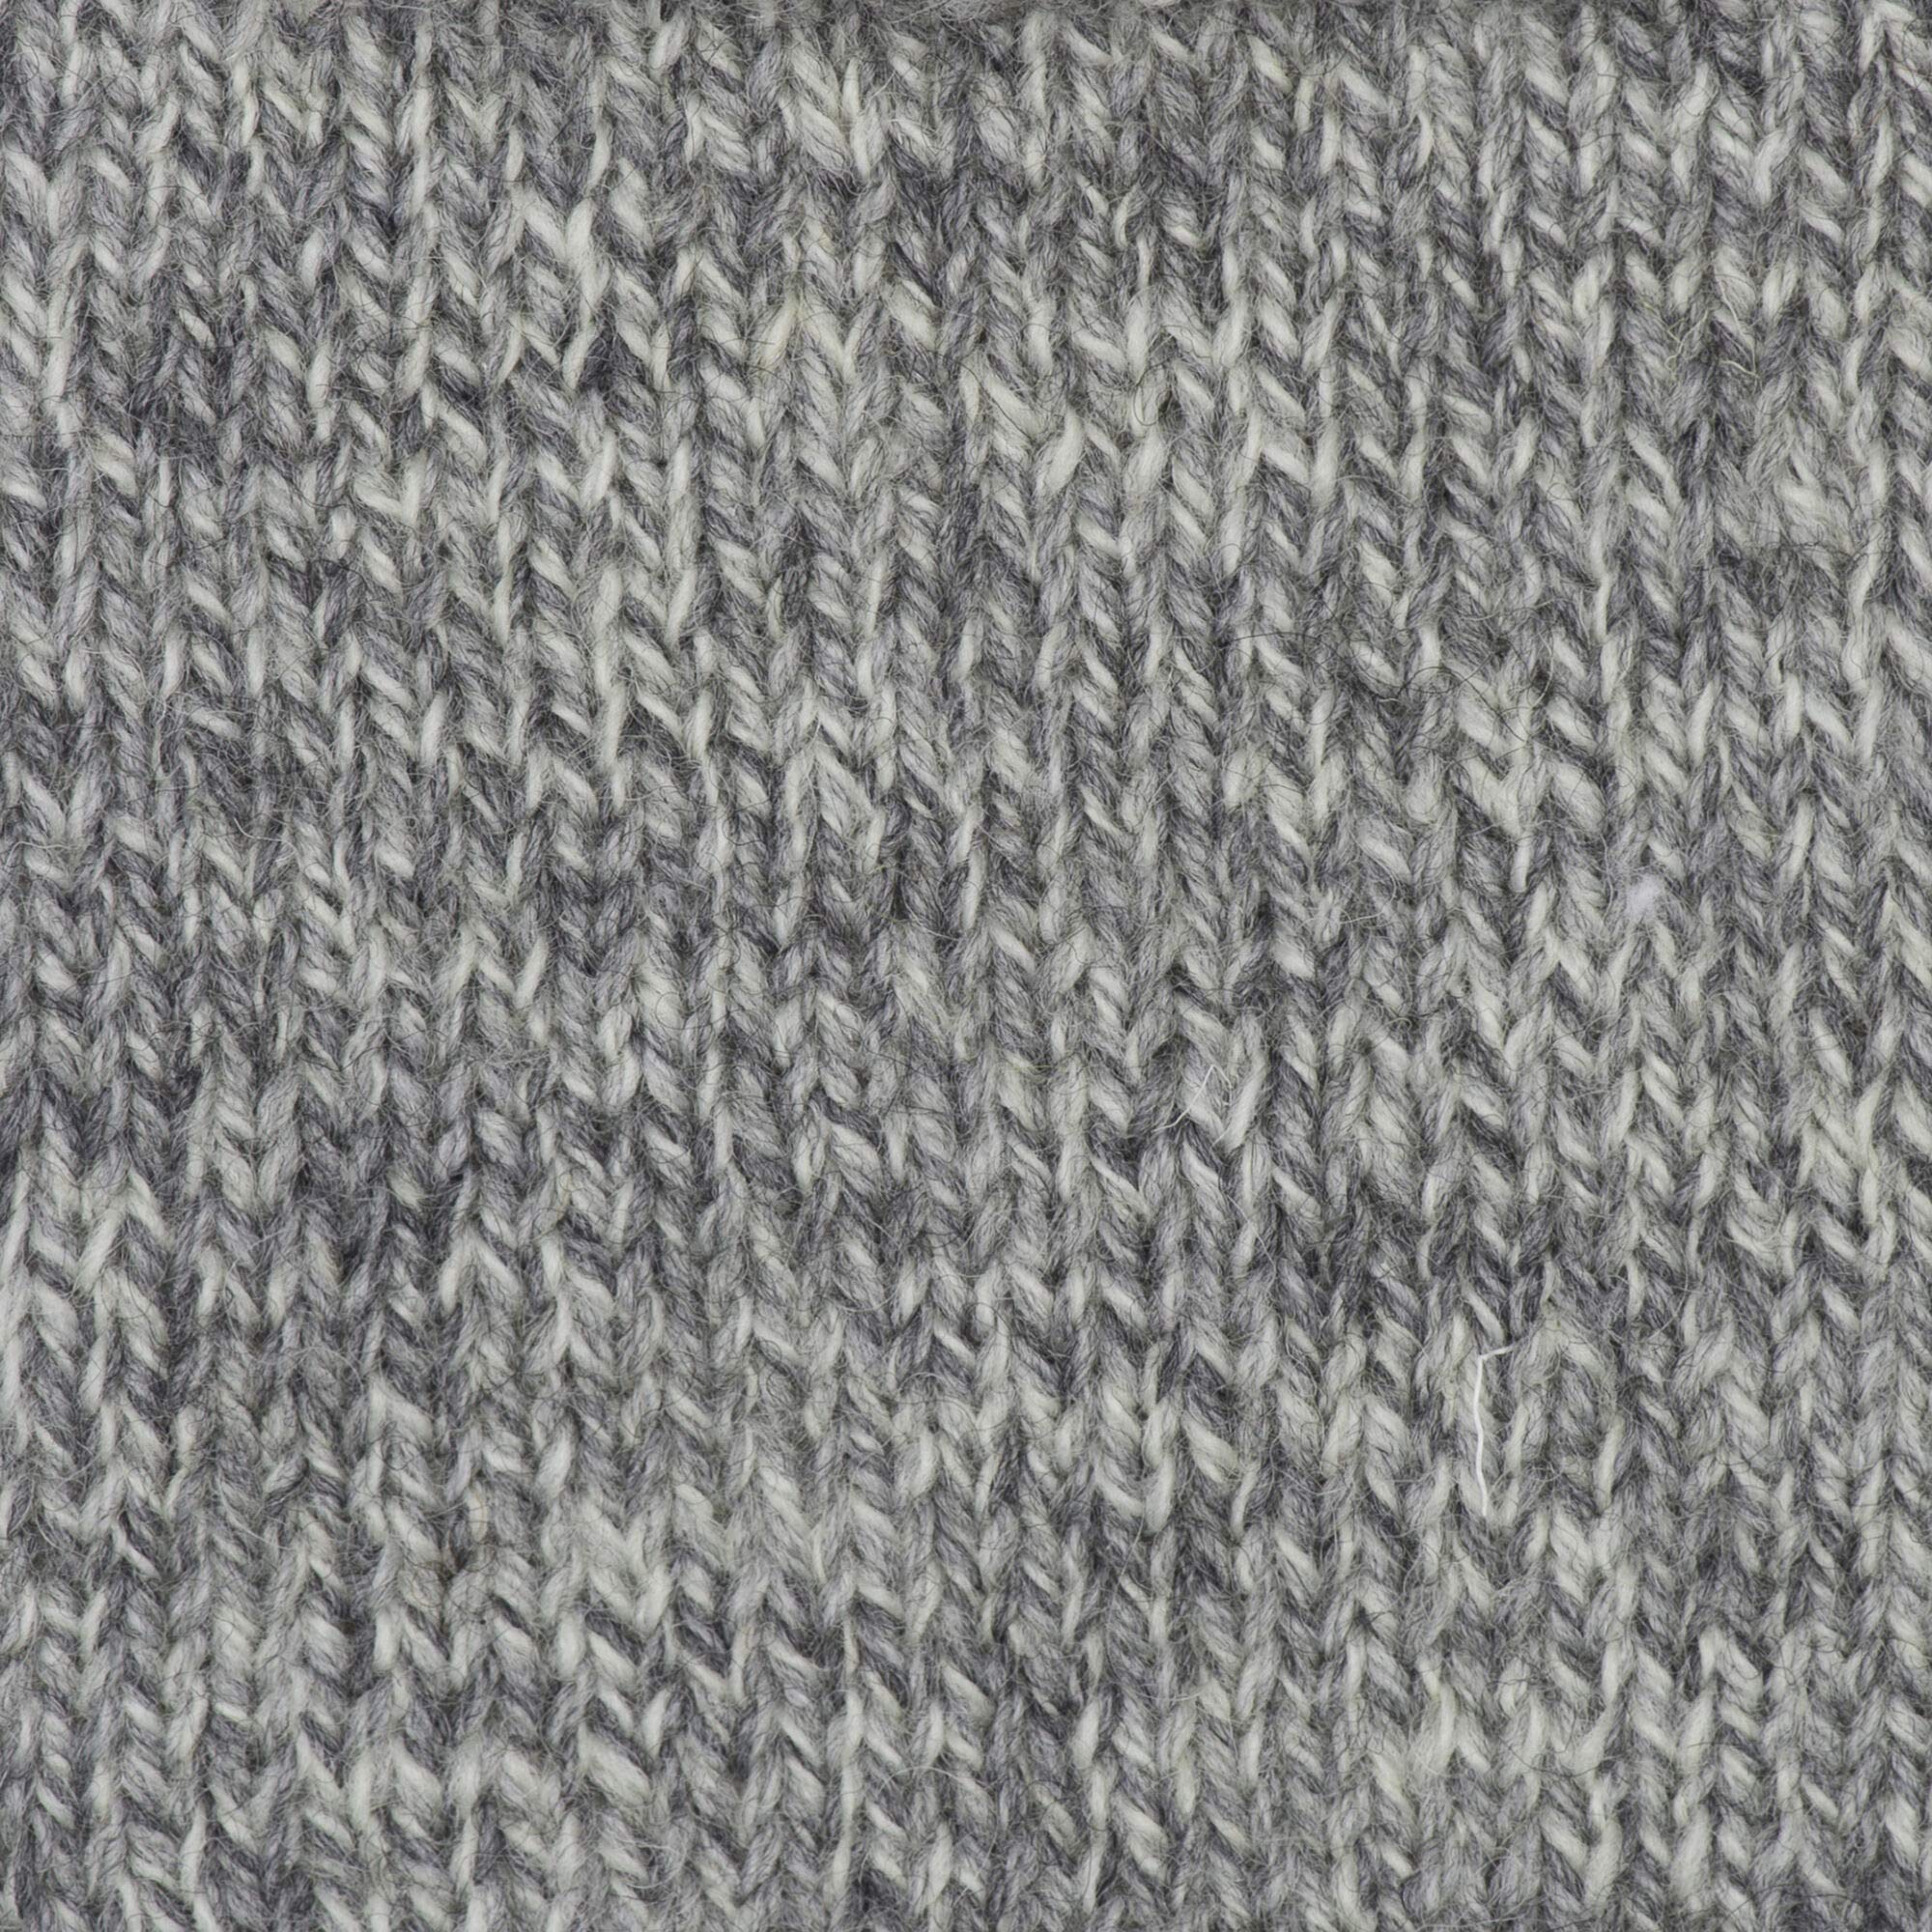 Patons Kroy Socks Yarn, 2-Pack, Grey Marl Plus Pattern